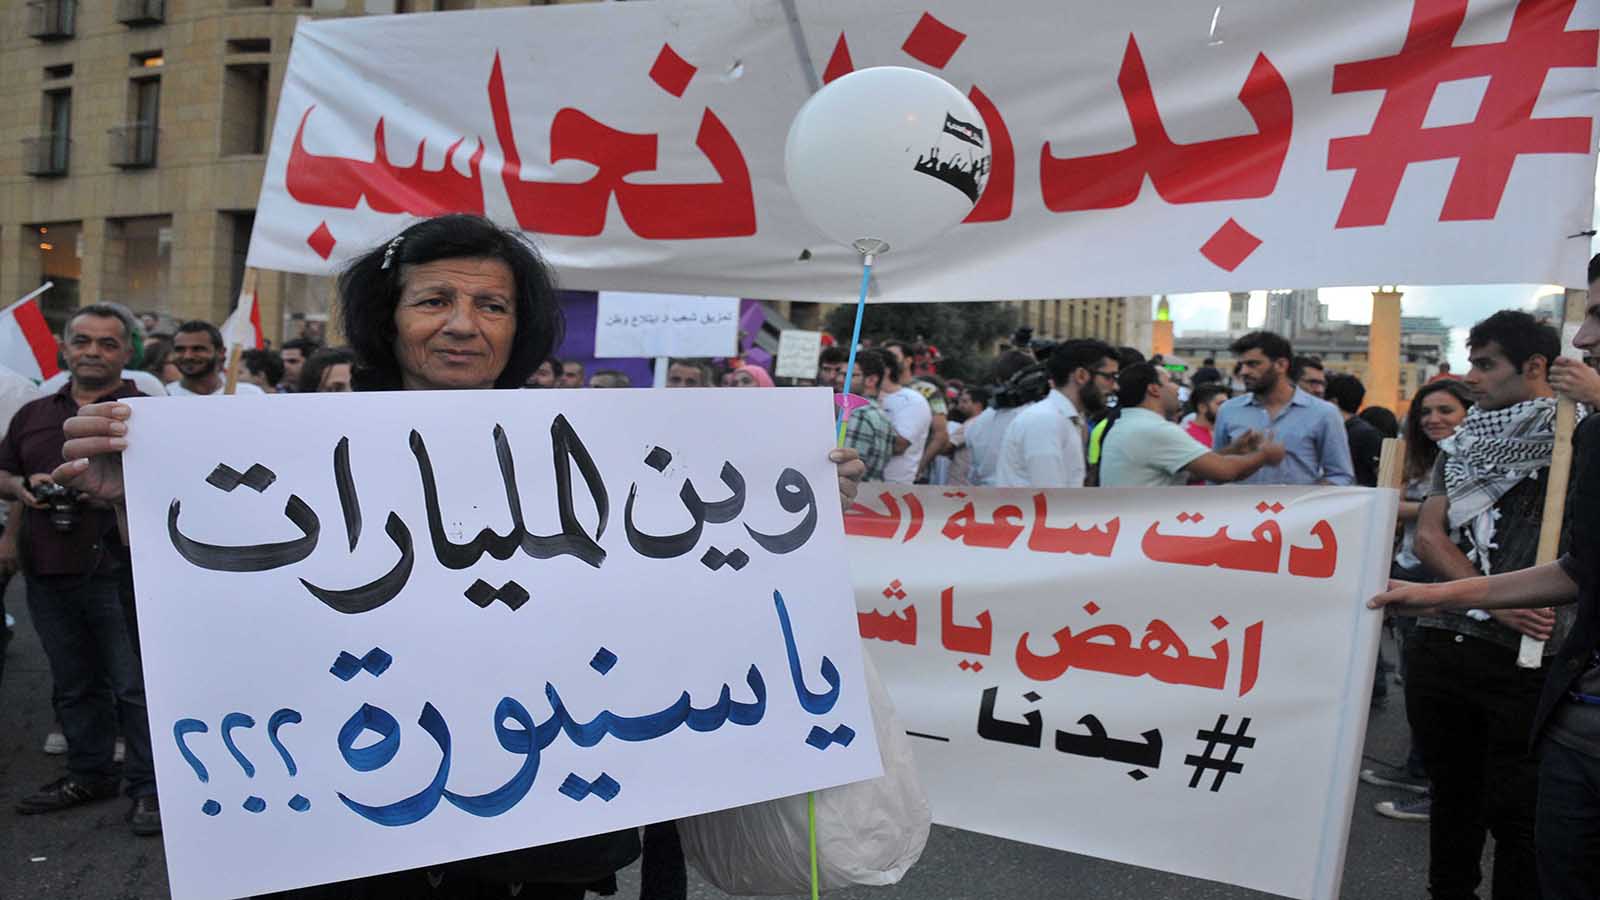 مظاهرة "الشارع والوضوح" في ساحة الشهداء (محمود الطويل)